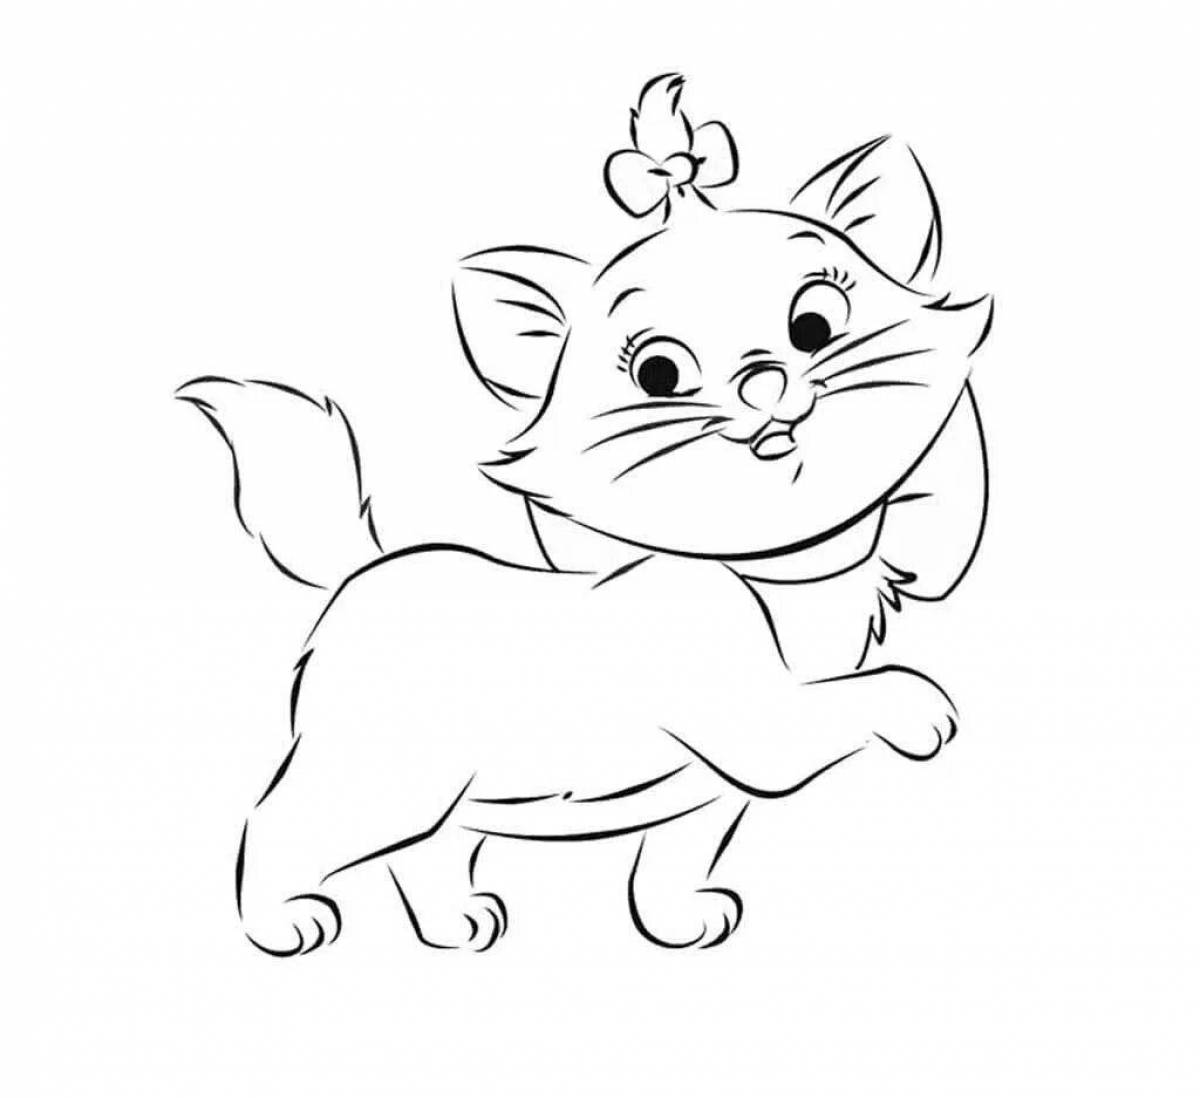 Fun drawing of a kitten